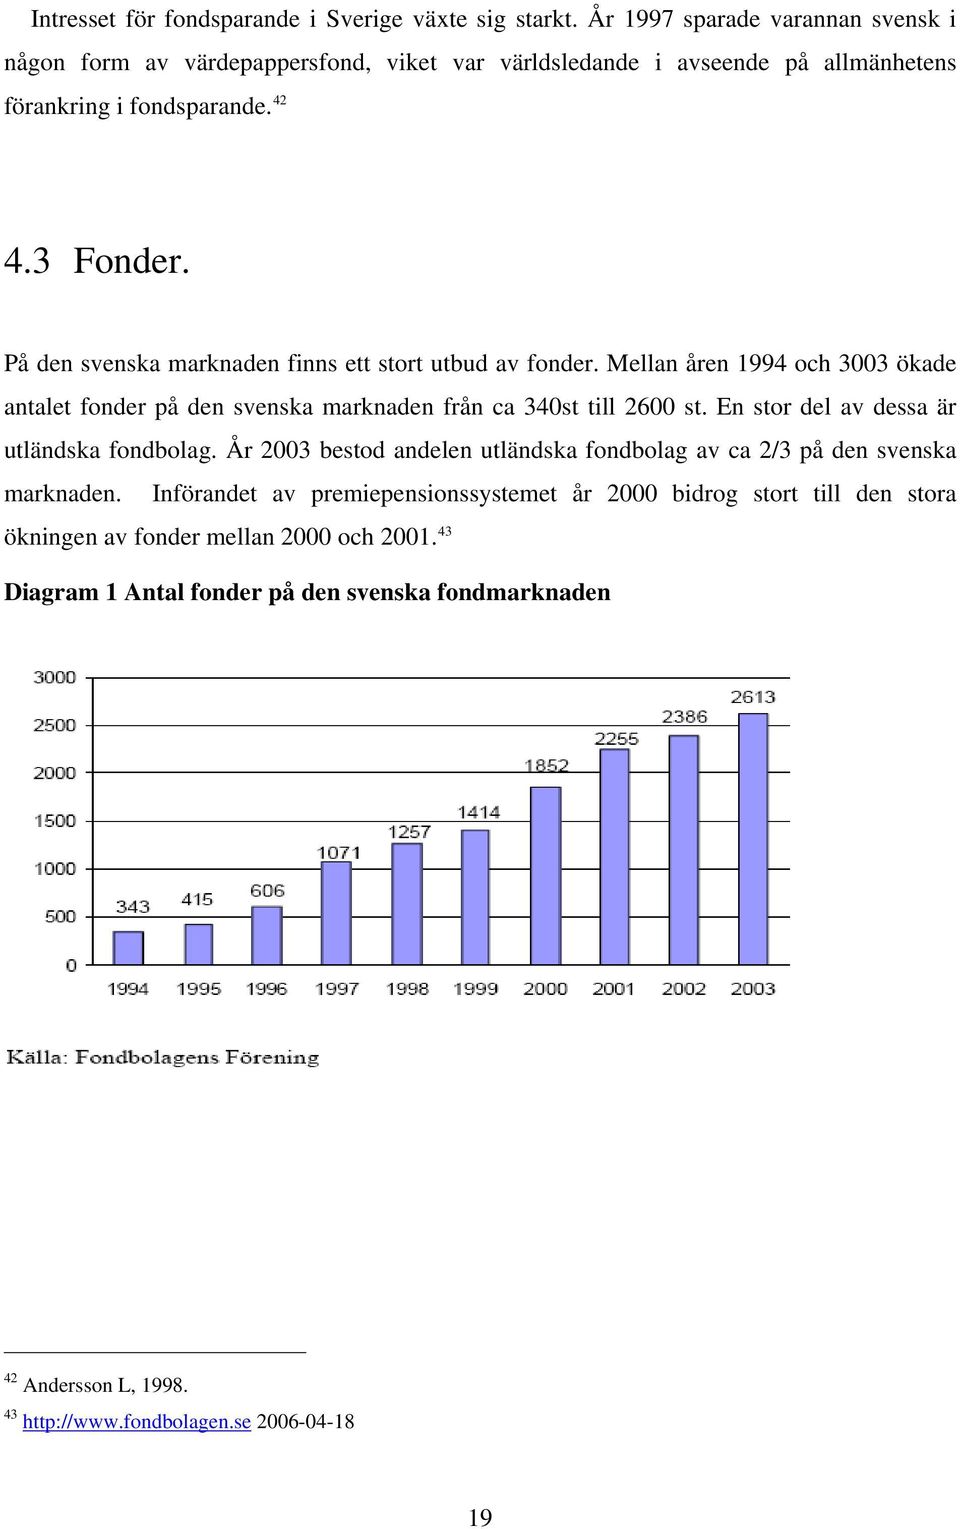 På den svenska marknaden finns ett stort utbud av fonder. Mellan åren 1994 och 3003 ökade antalet fonder på den svenska marknaden från ca 340st till 2600 st.